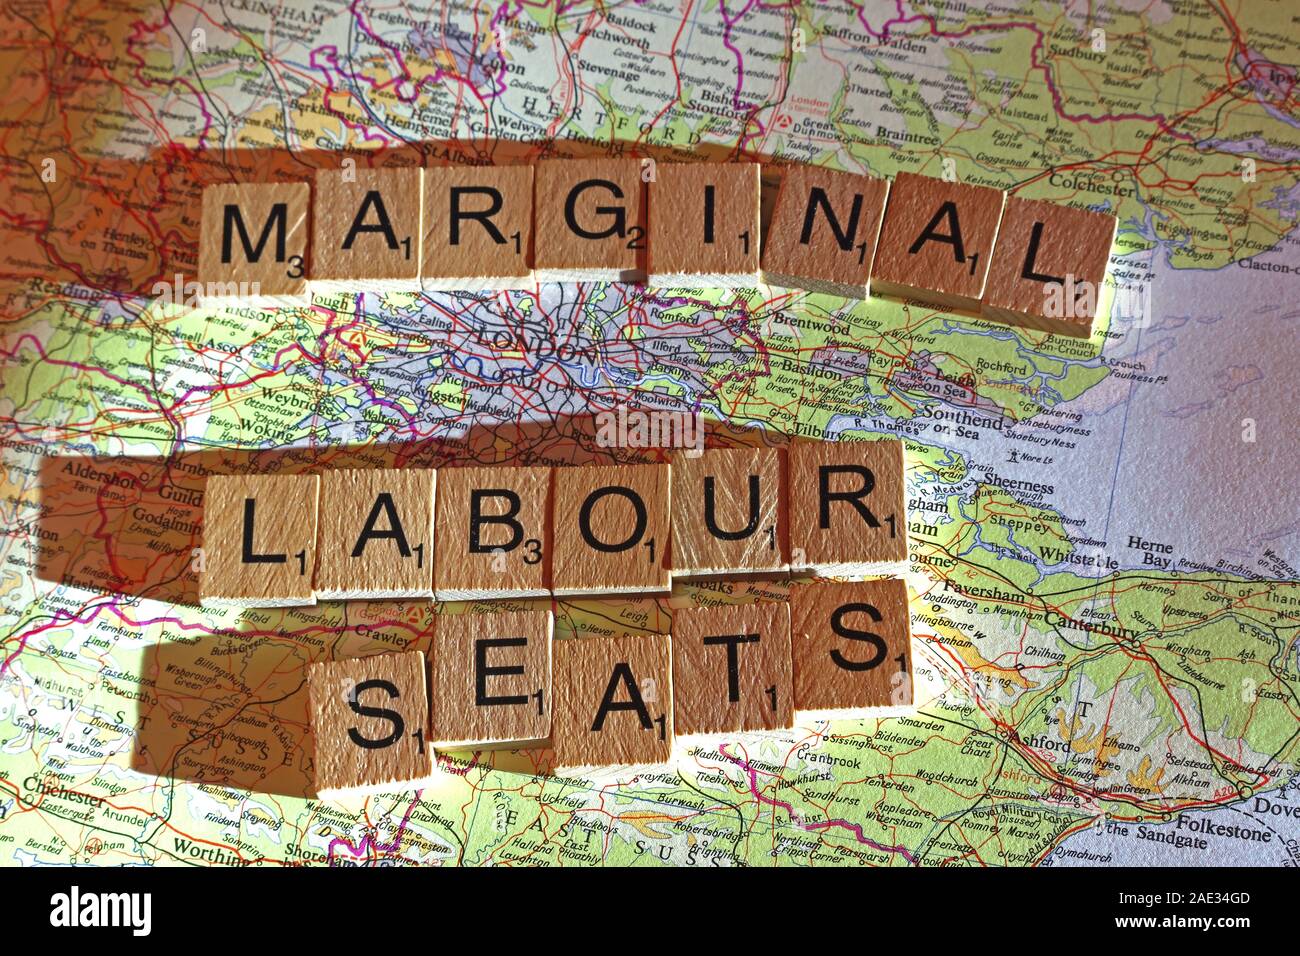 Marginale posti di lavoro il farro in lettere di Scrabble su di una mappa del Regno Unito - Elezioni generali, alle elezioni politiche di partito leader,,parti,rivendicazioni,dubbi Foto Stock